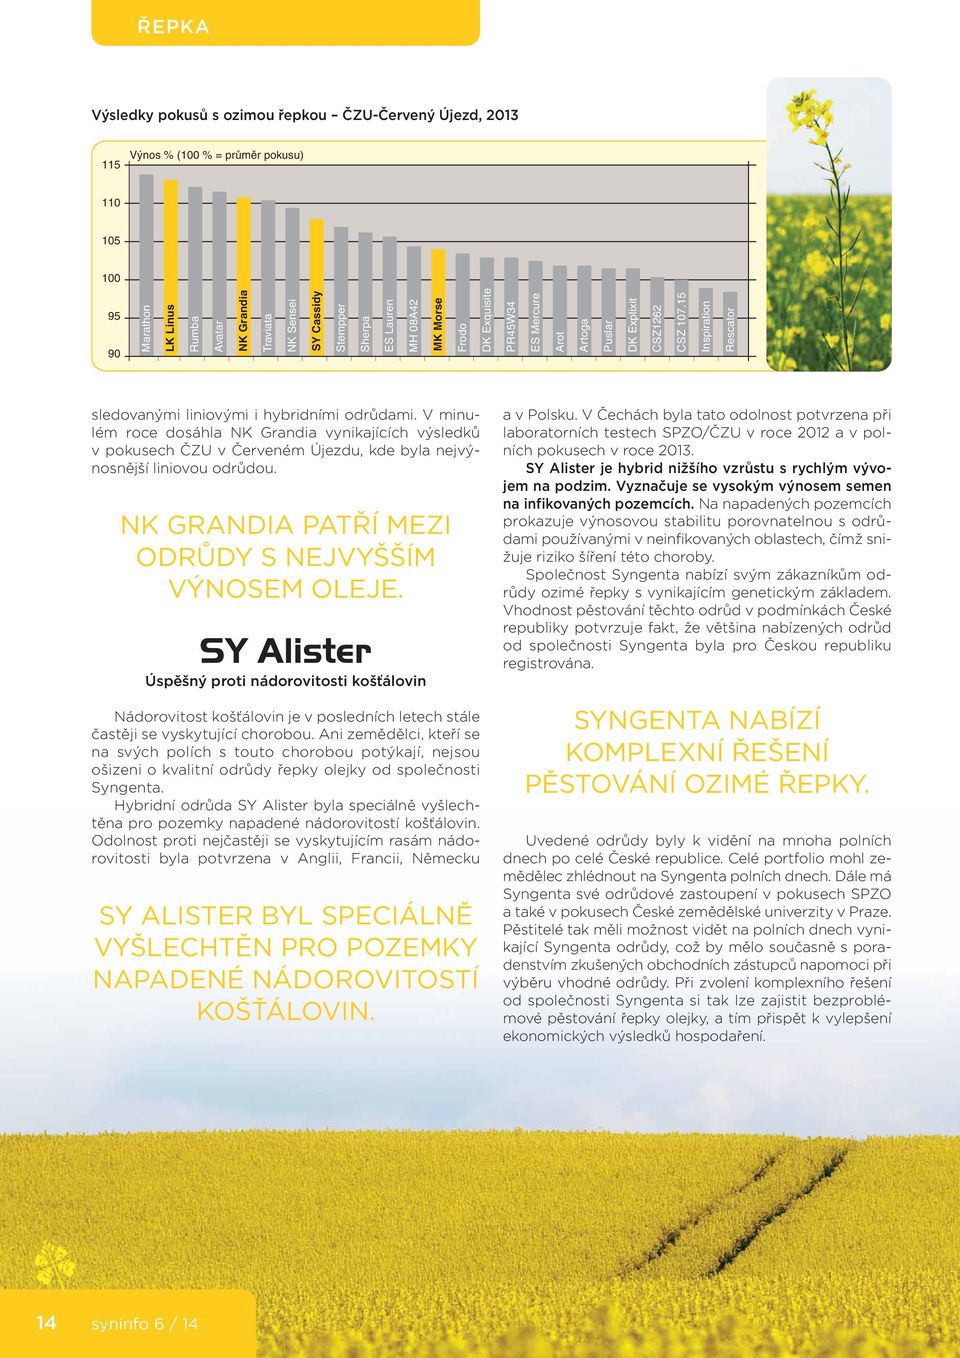 V minulém roce dosáhla NK Grandia vynikajících výsledků v pokusech ČZU v Červeném Újezdu, kde byla nejvýnosnější liniovou odrůdou. NK GRANDIA PATŘÍ MEZI ODRŮDY S NEJVYŠŠÍM VÝNOSEM OLEJE.